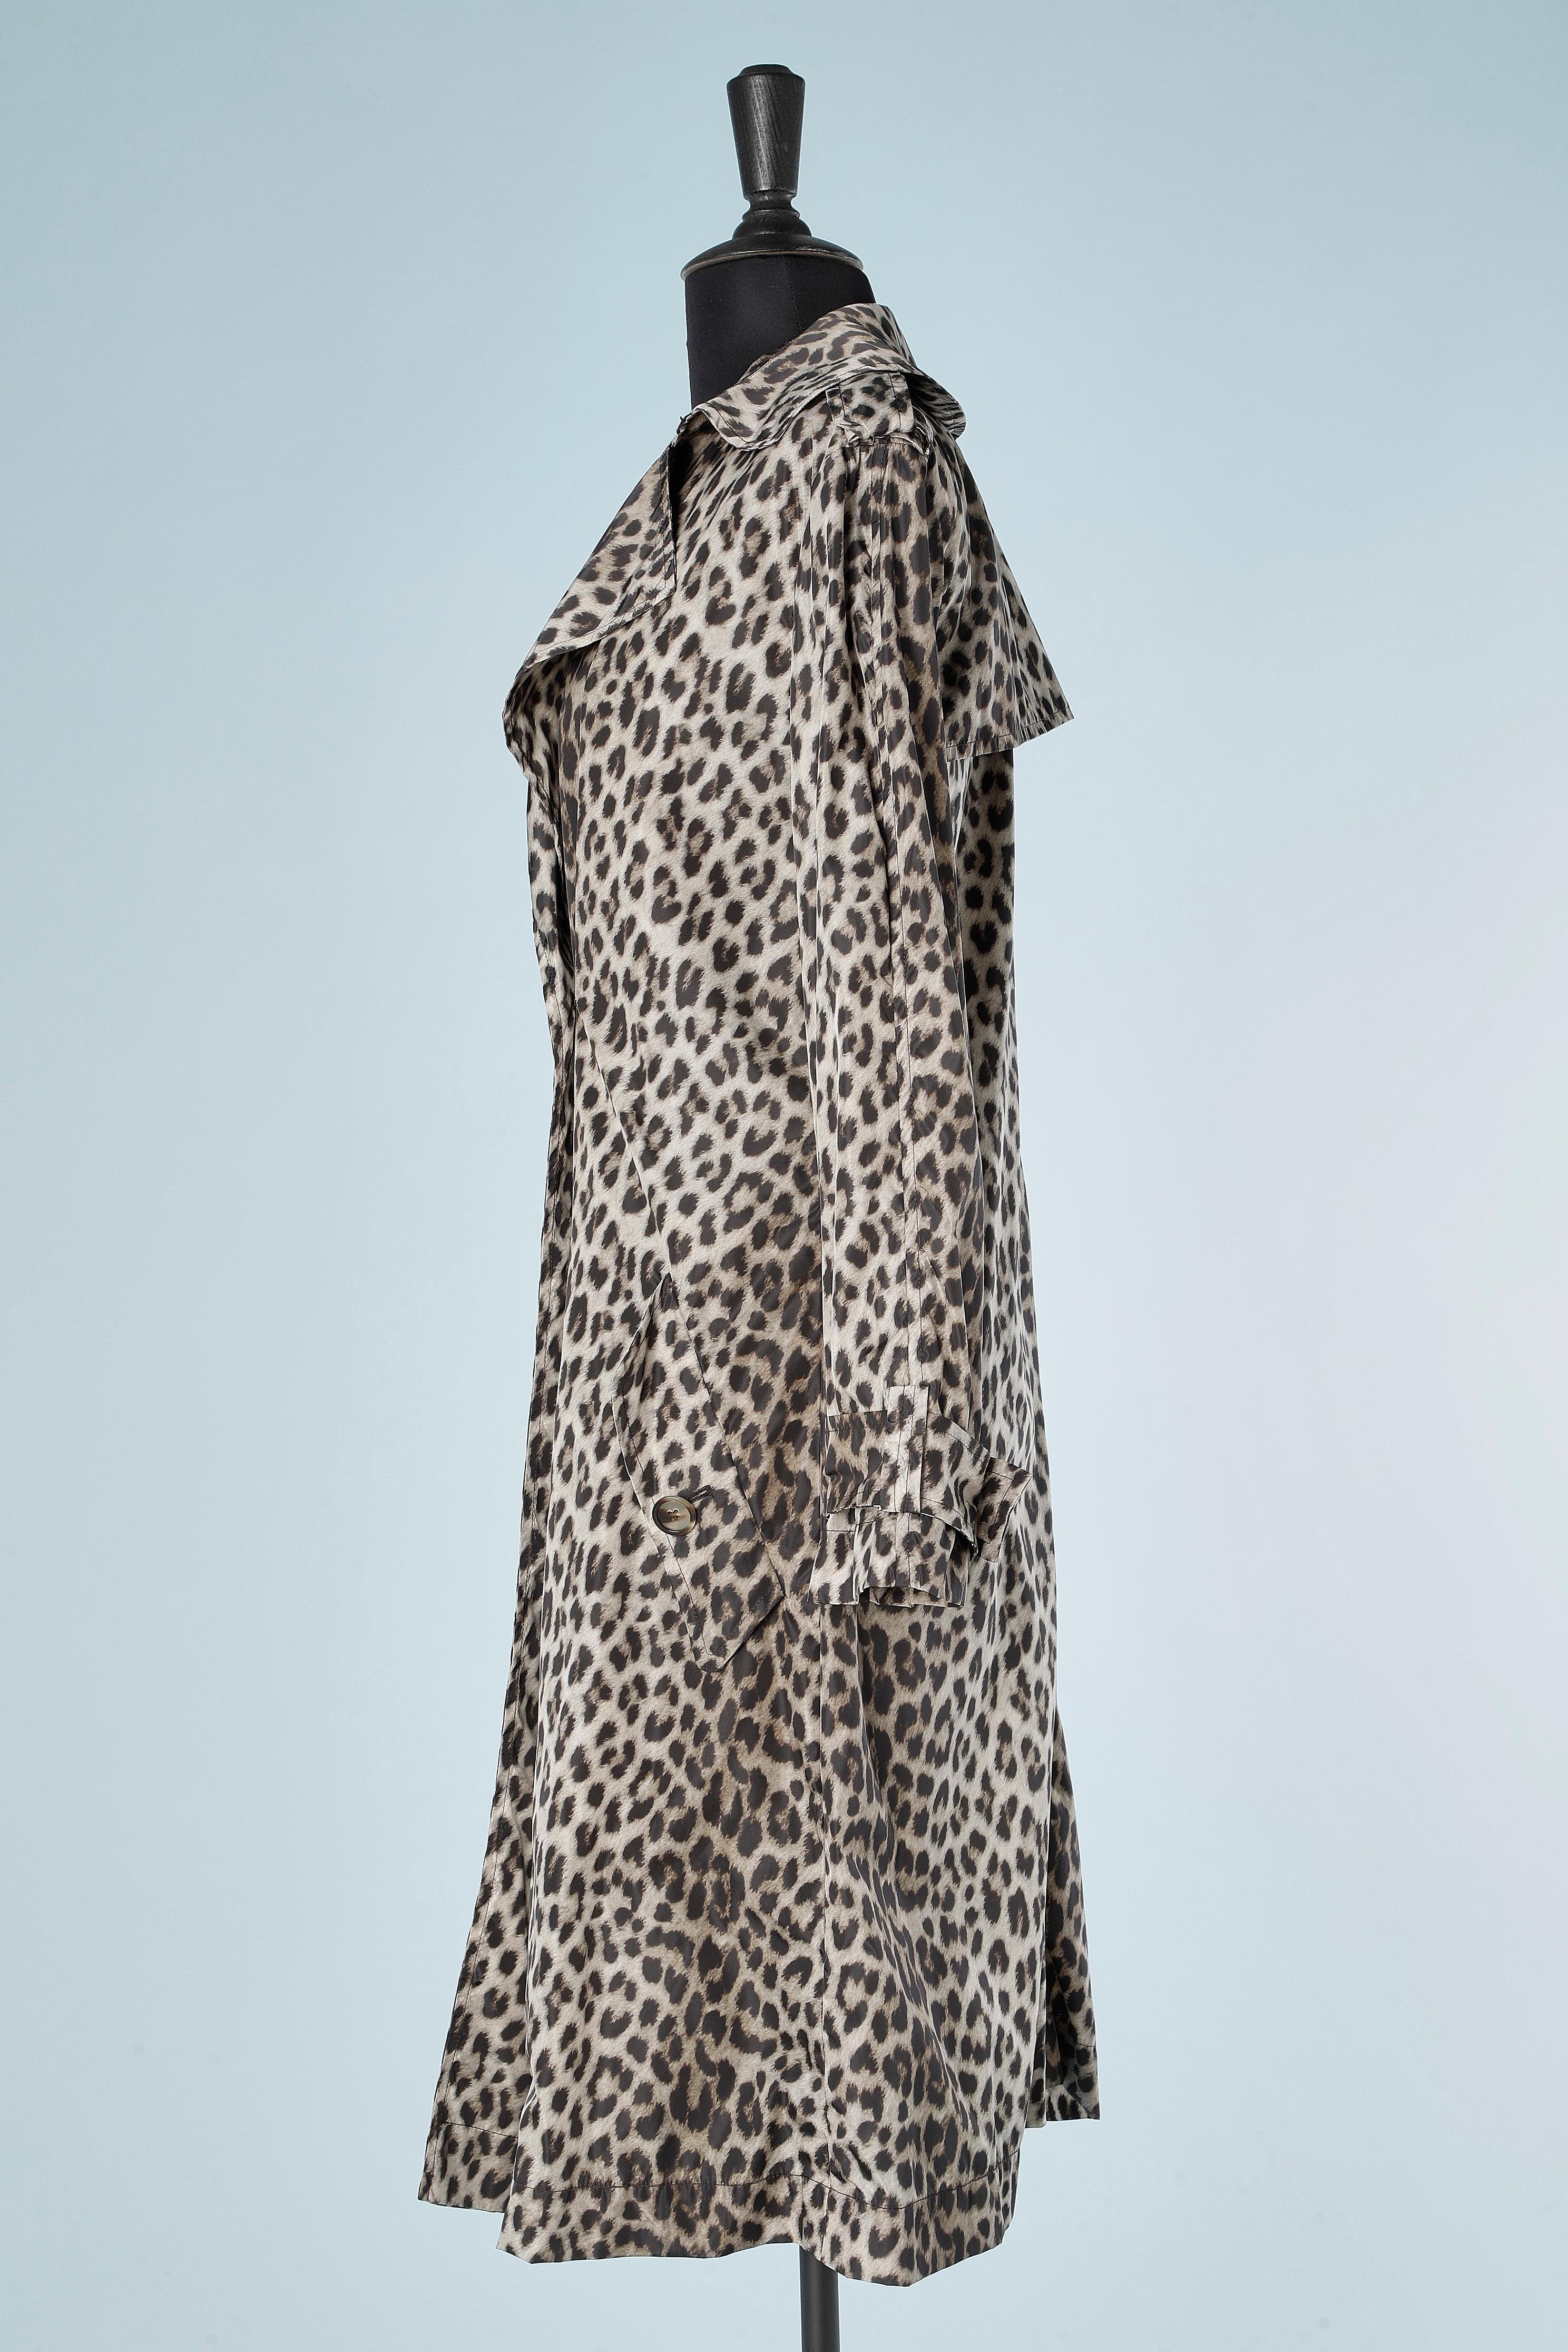 Gris Trench-coat croisé en nylon imprimé léopard Lanvin by Alber Elbaz 2010